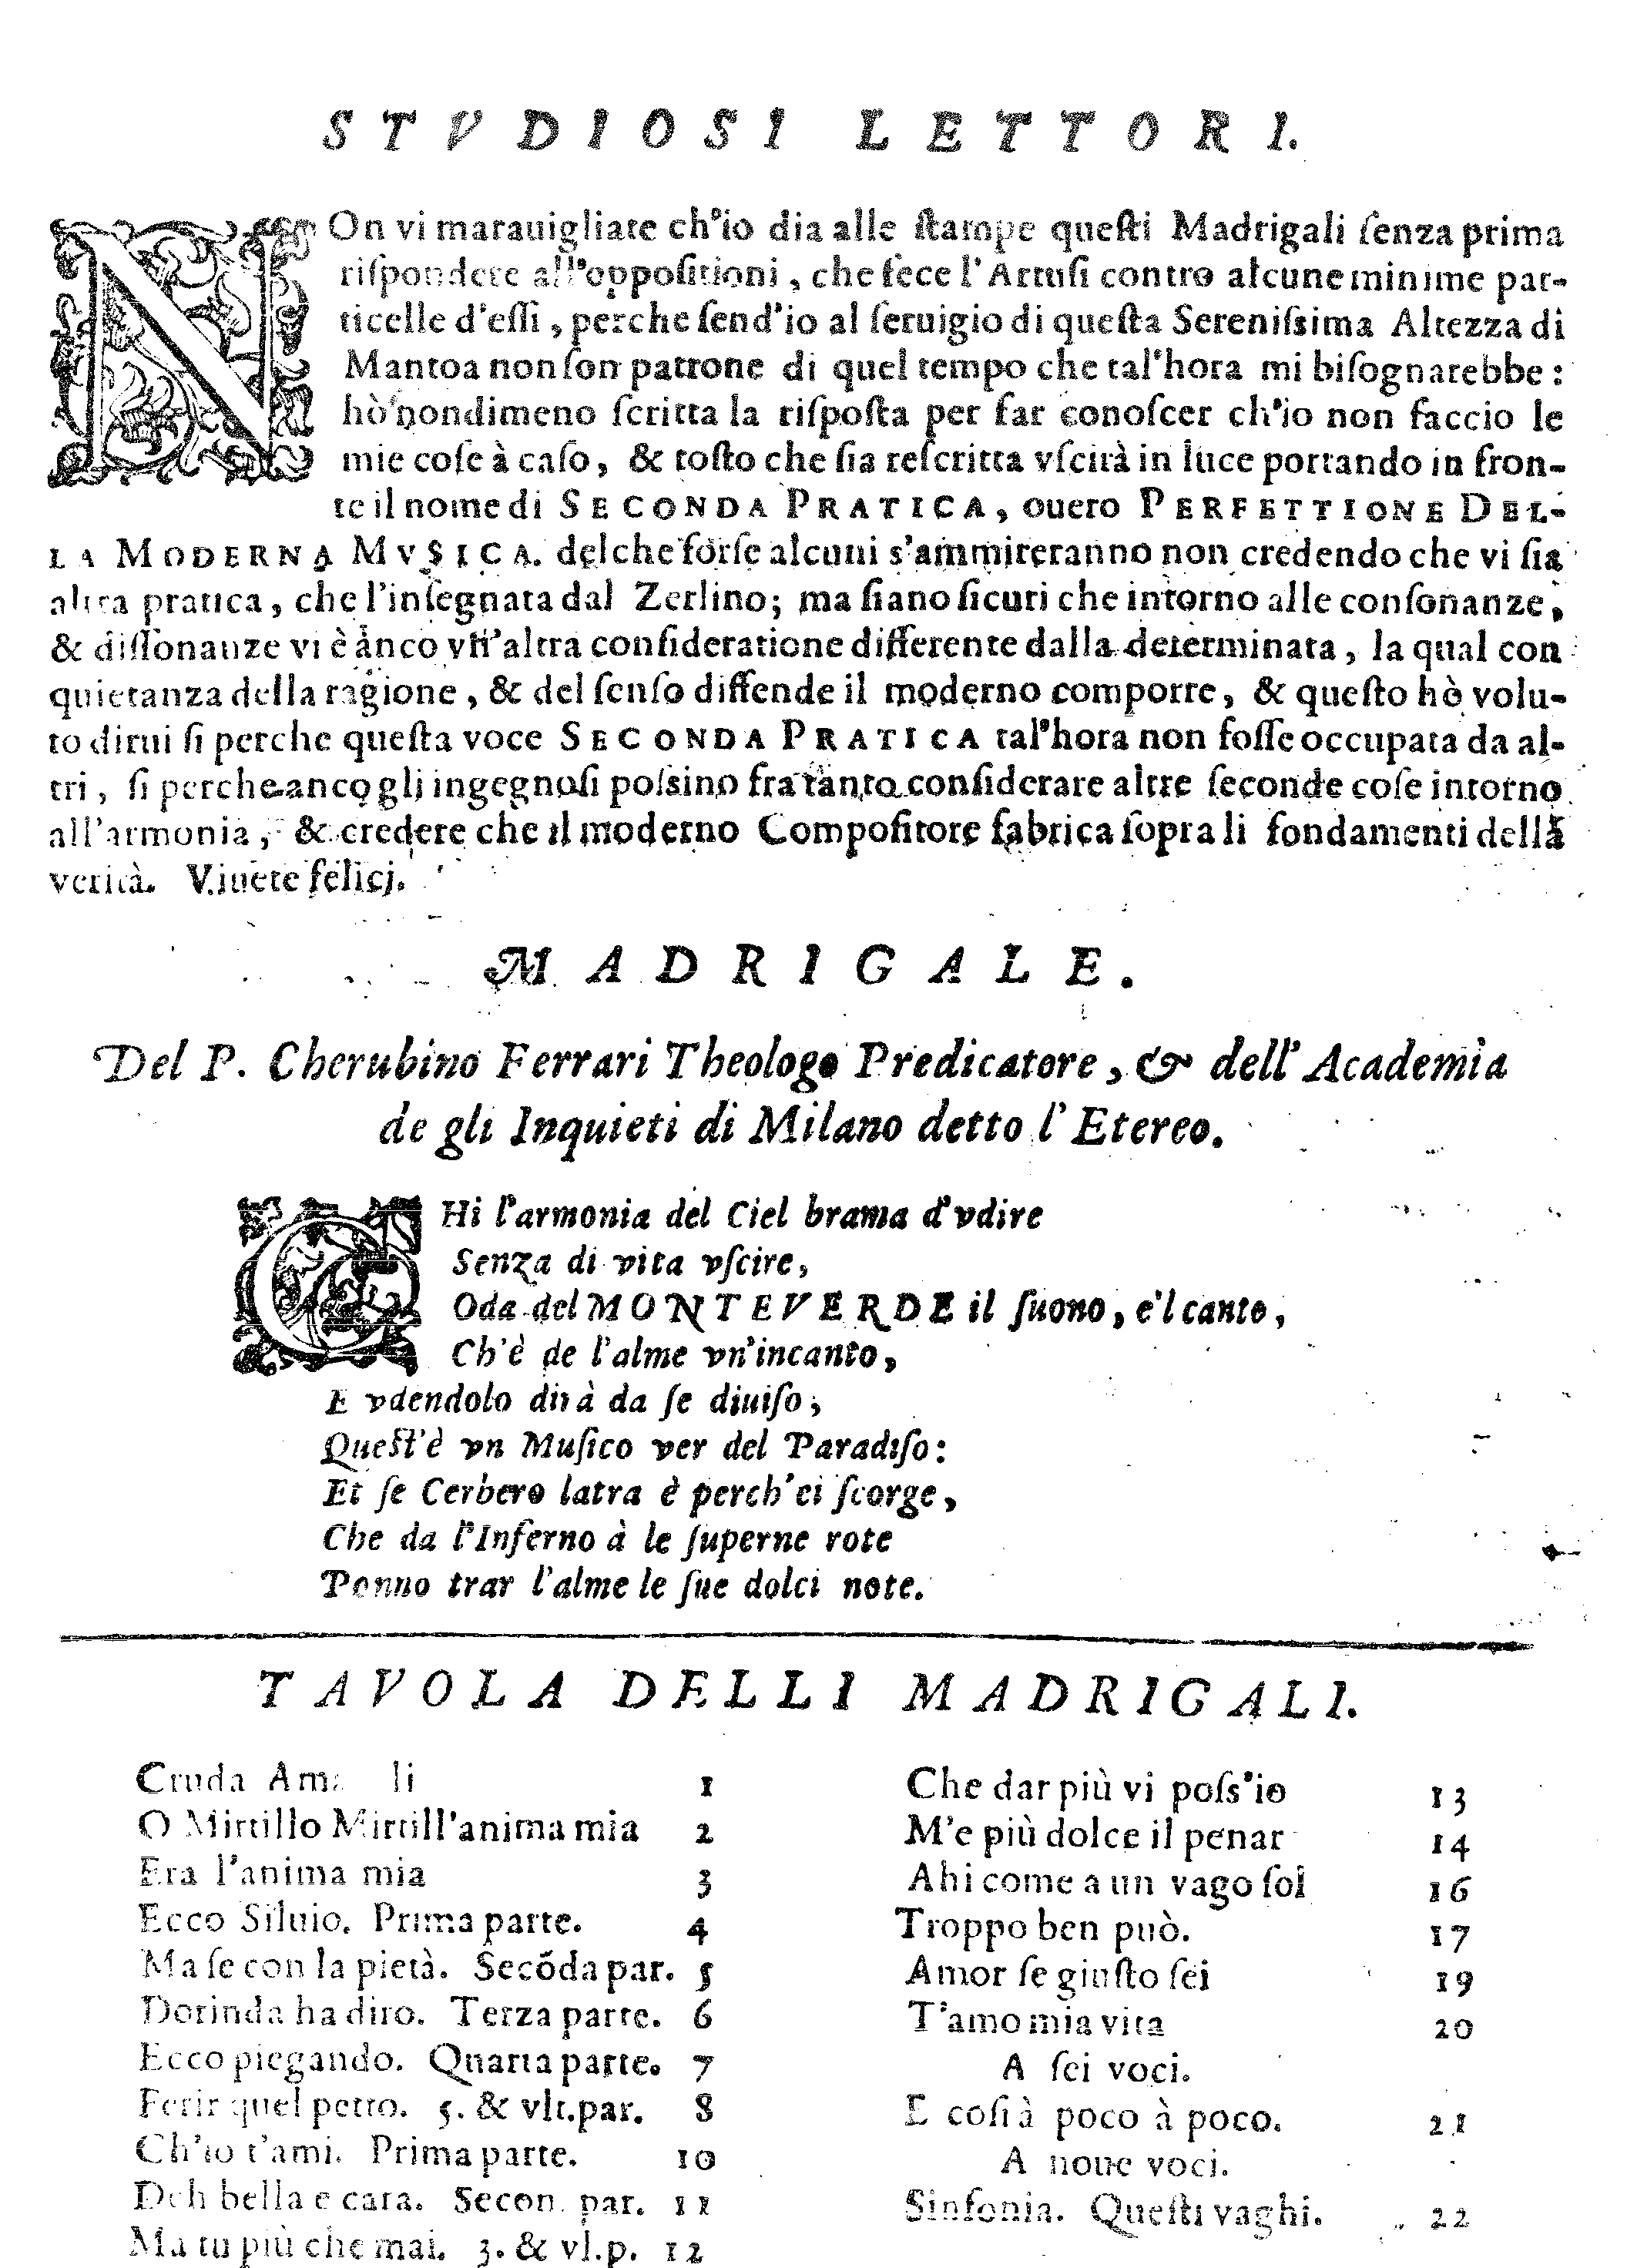 La nota agli «studiosi lettori» e l’indice dei madrigali dal Quinto Libro de Madrigali di Claudio Monteverdi